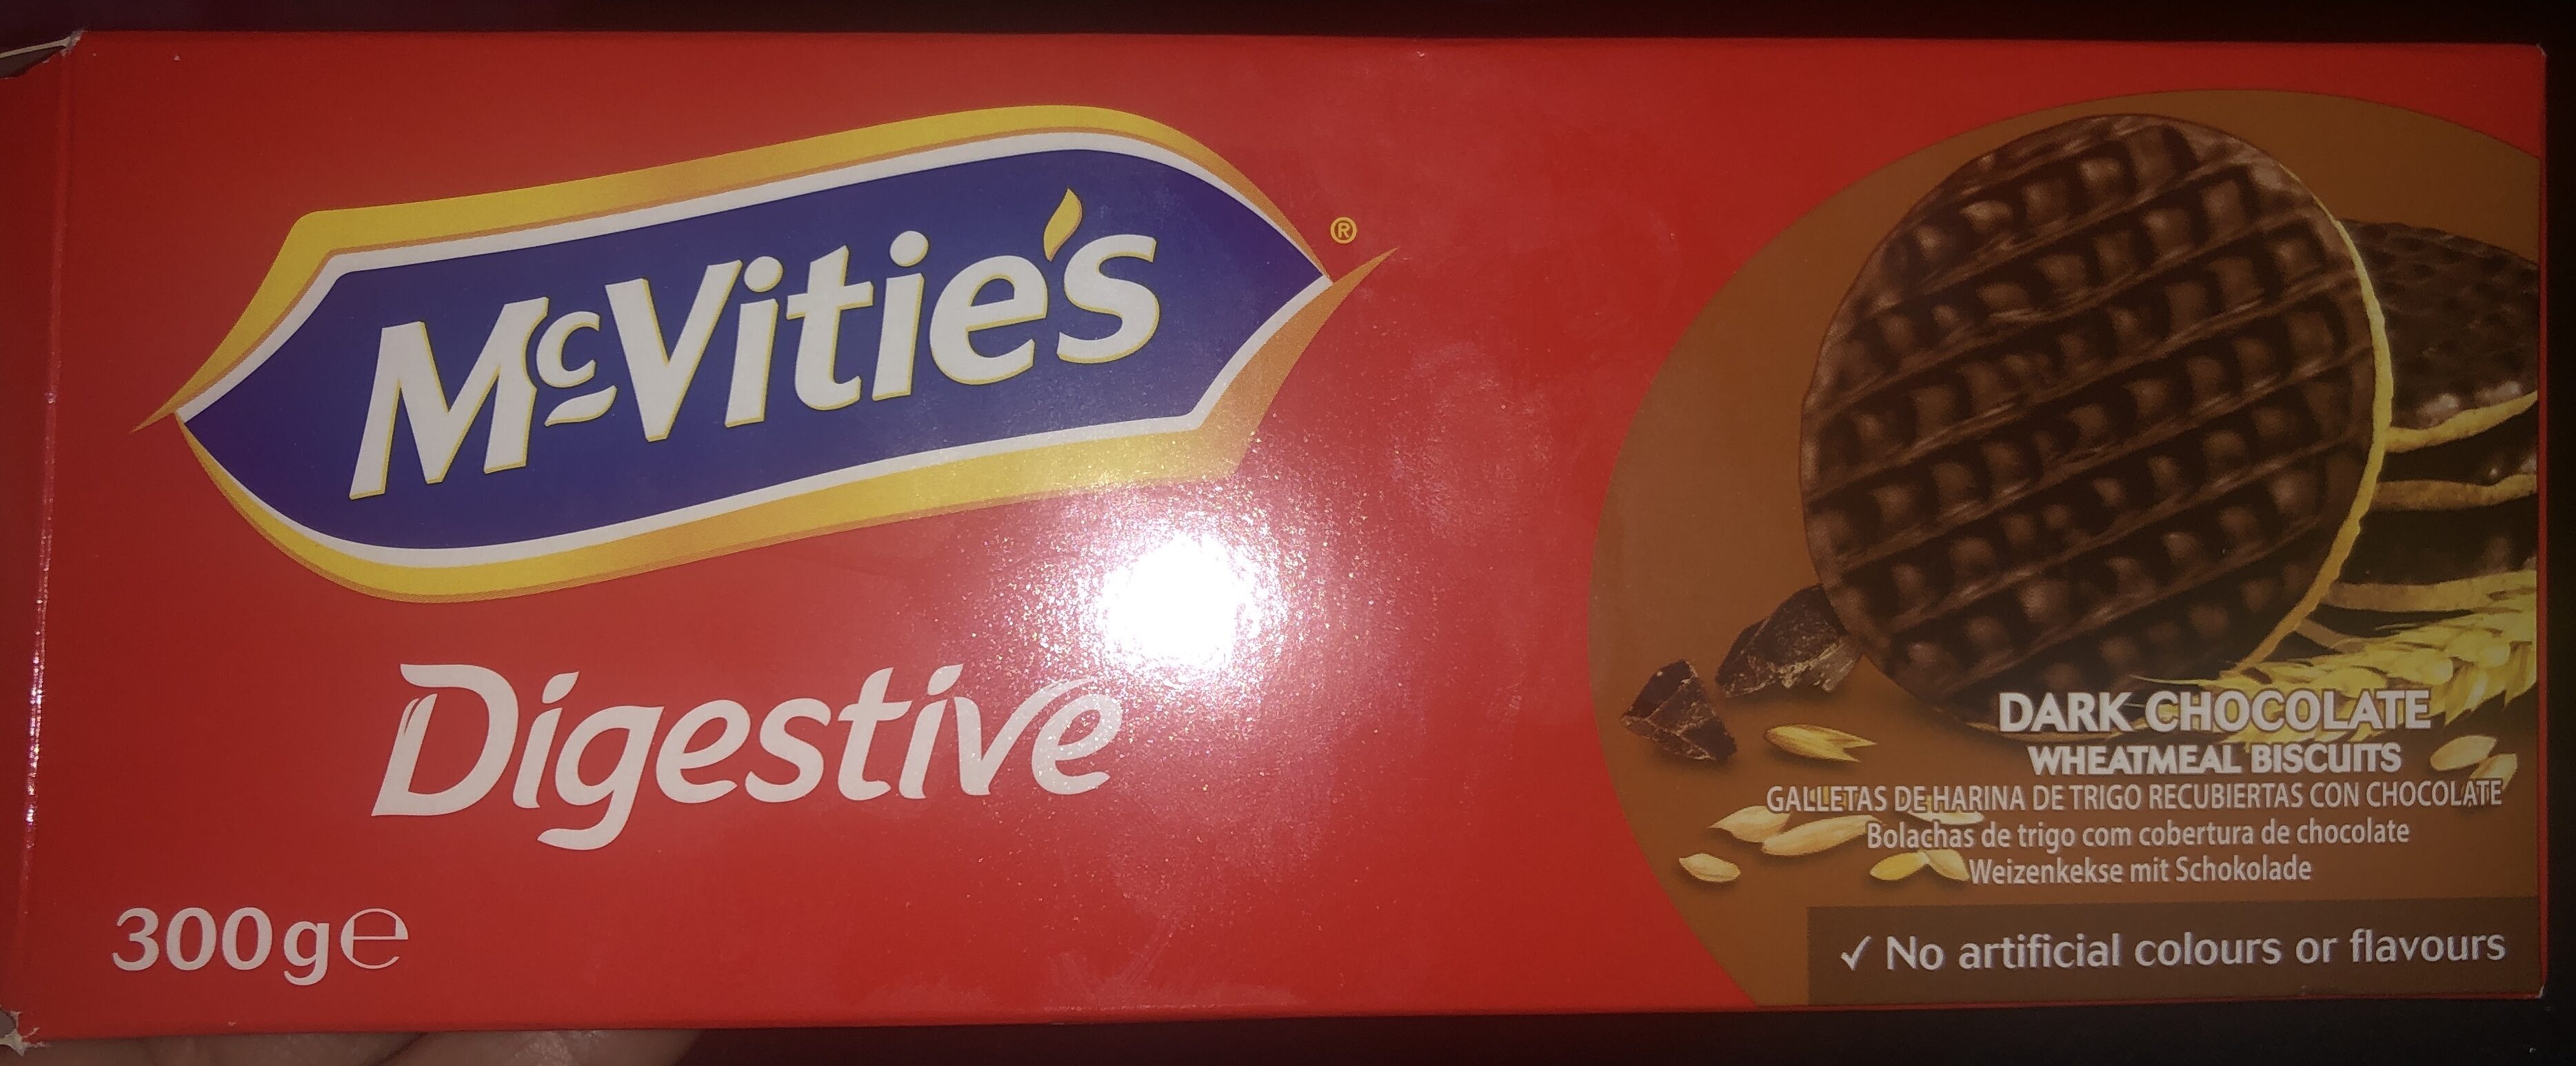 Digestive galletas con chocolate negro - Produit - en